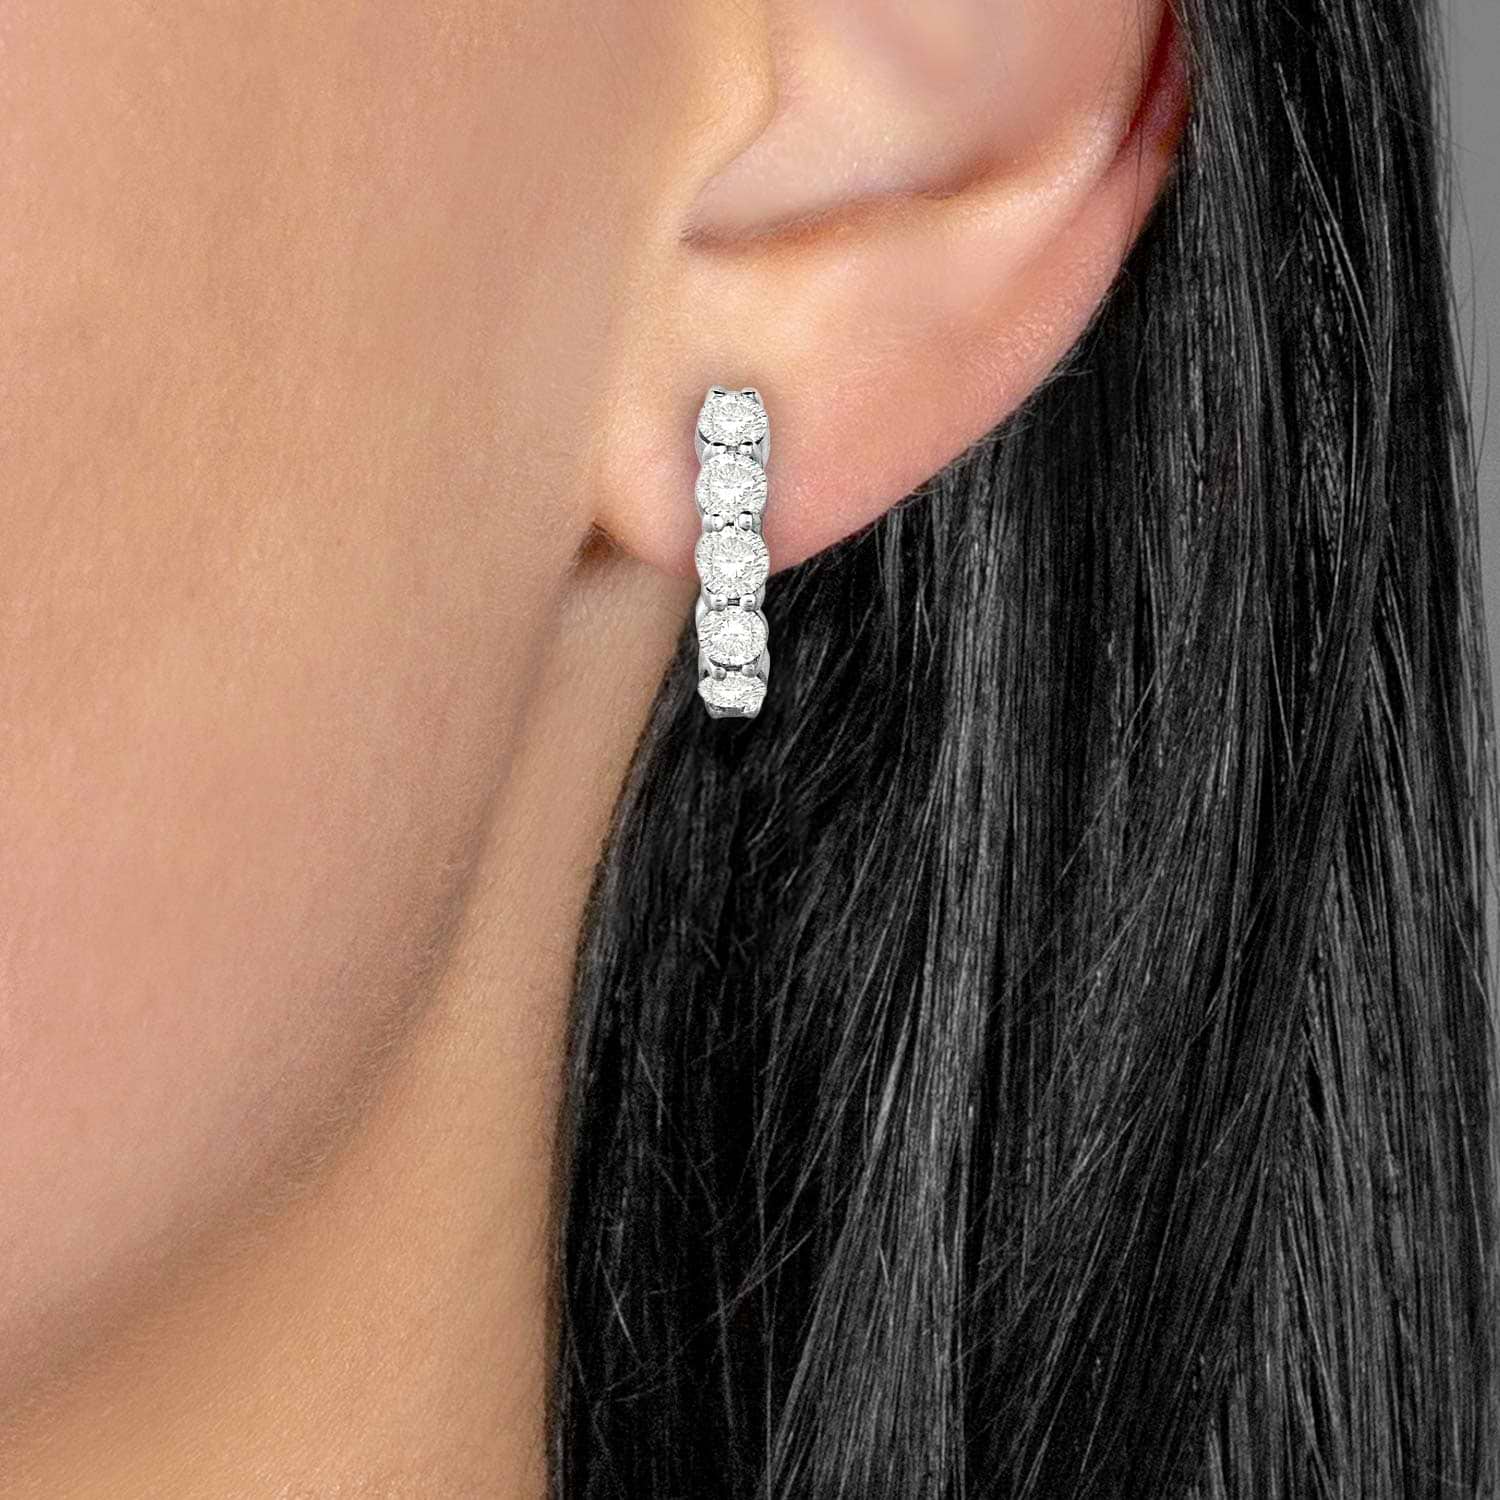 Hinged Hoop Diamond Huggie Style Earrings in 14k White Gold (0.33ct)